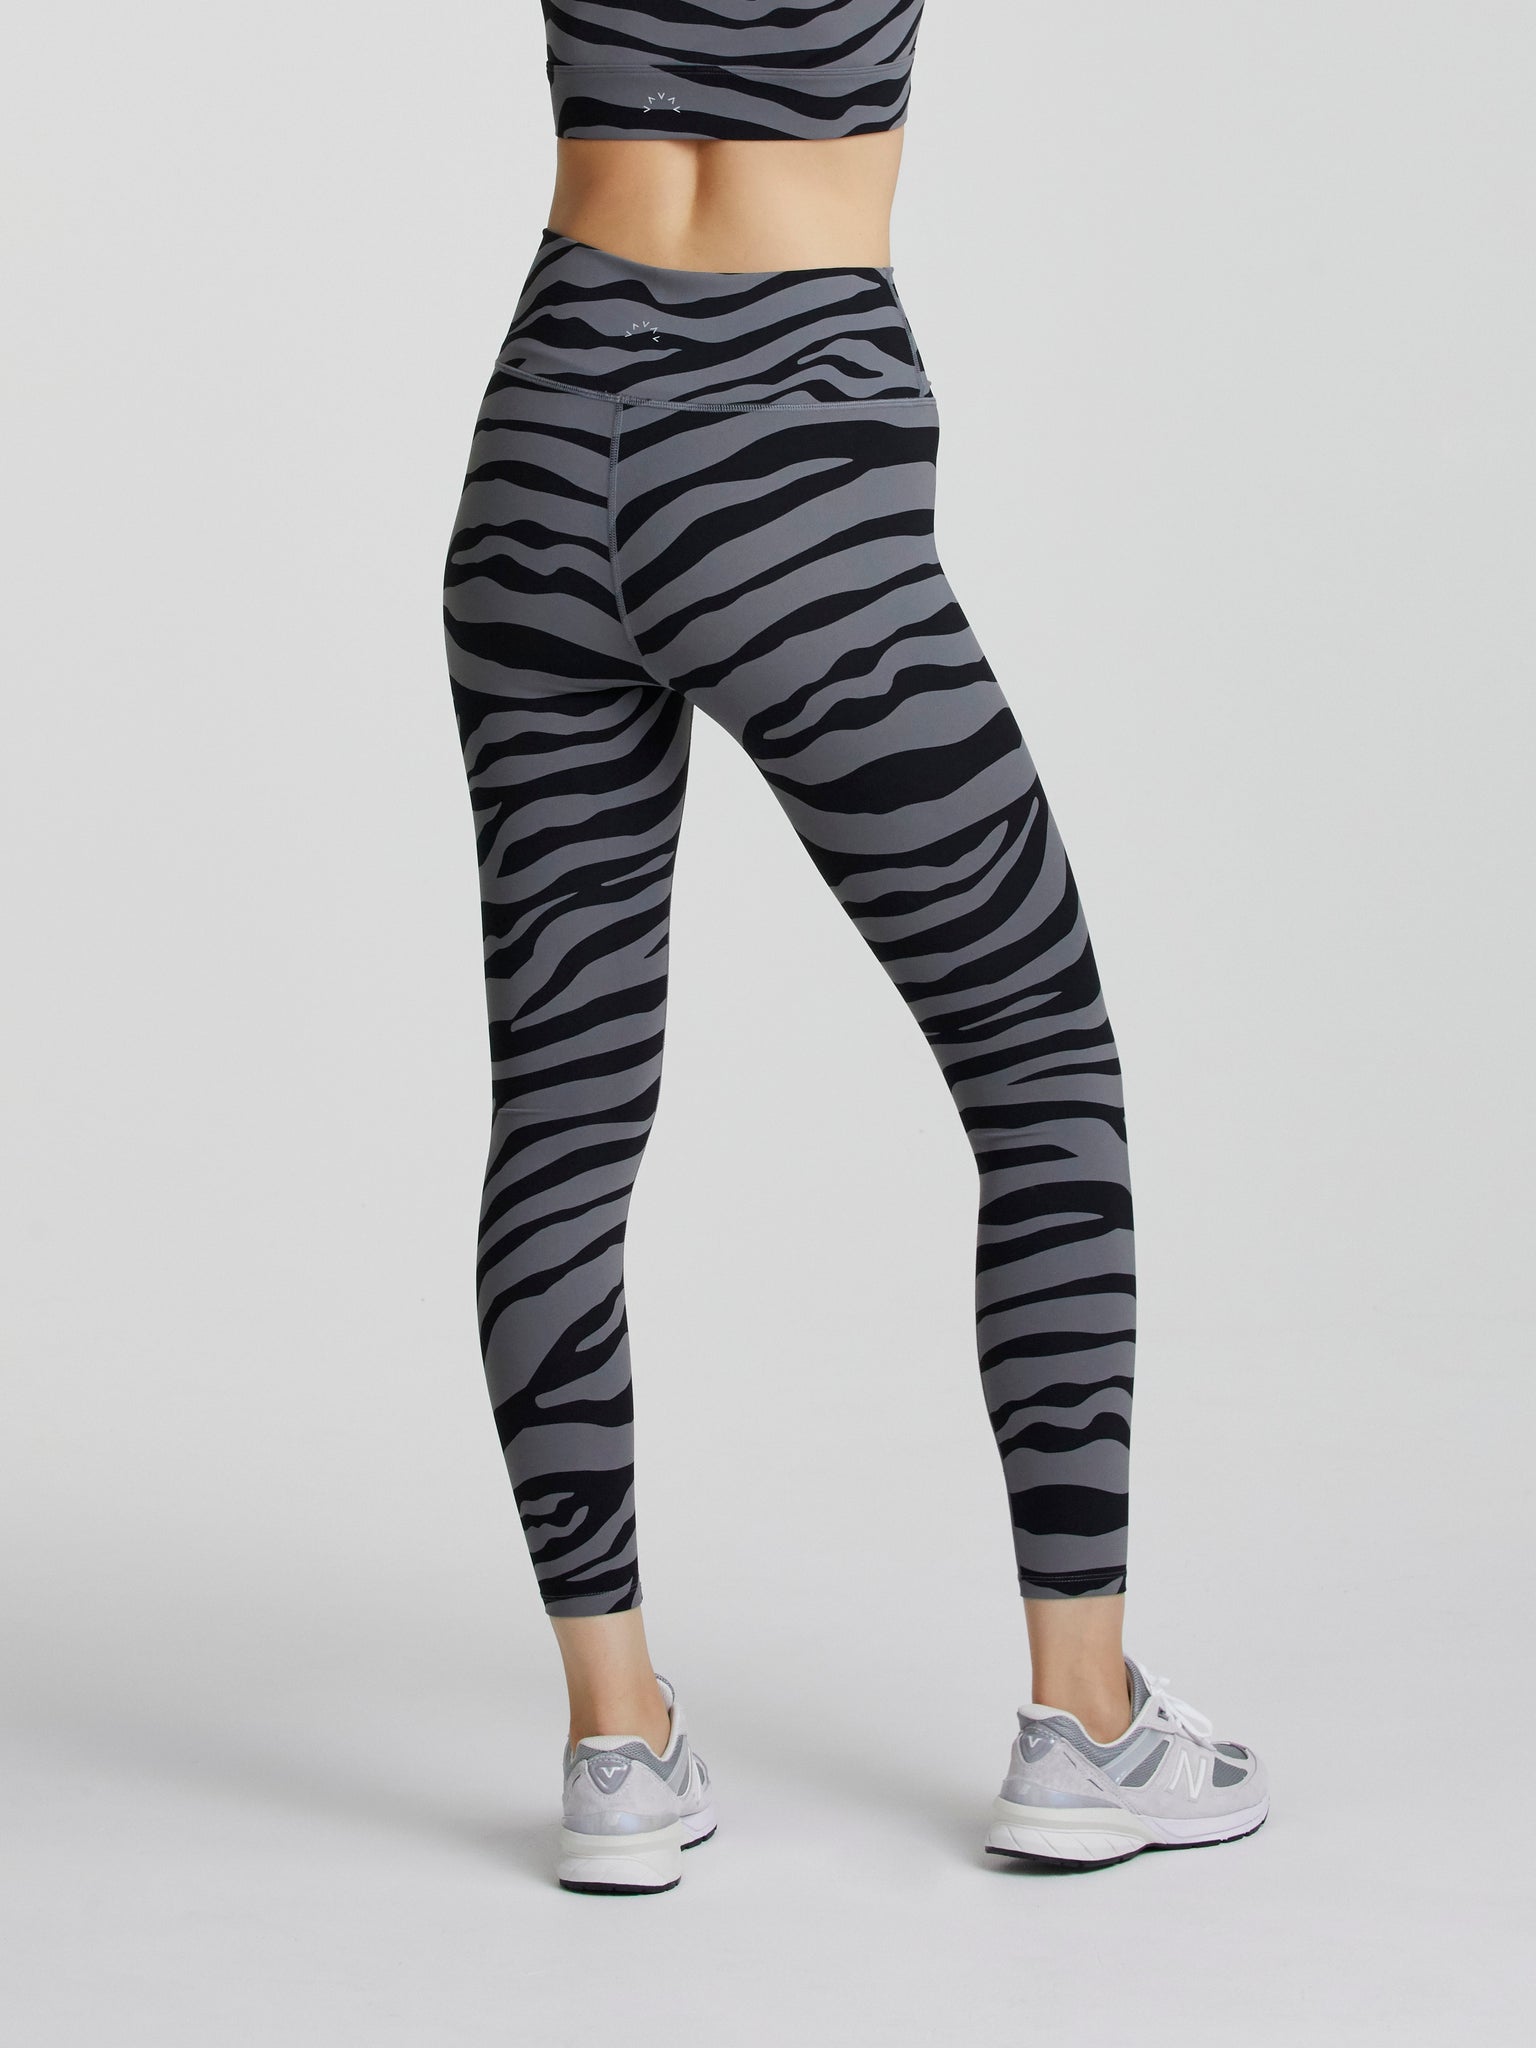 VARLEY Luna Legging Steel Zebra – Grace & Strength the Boutique